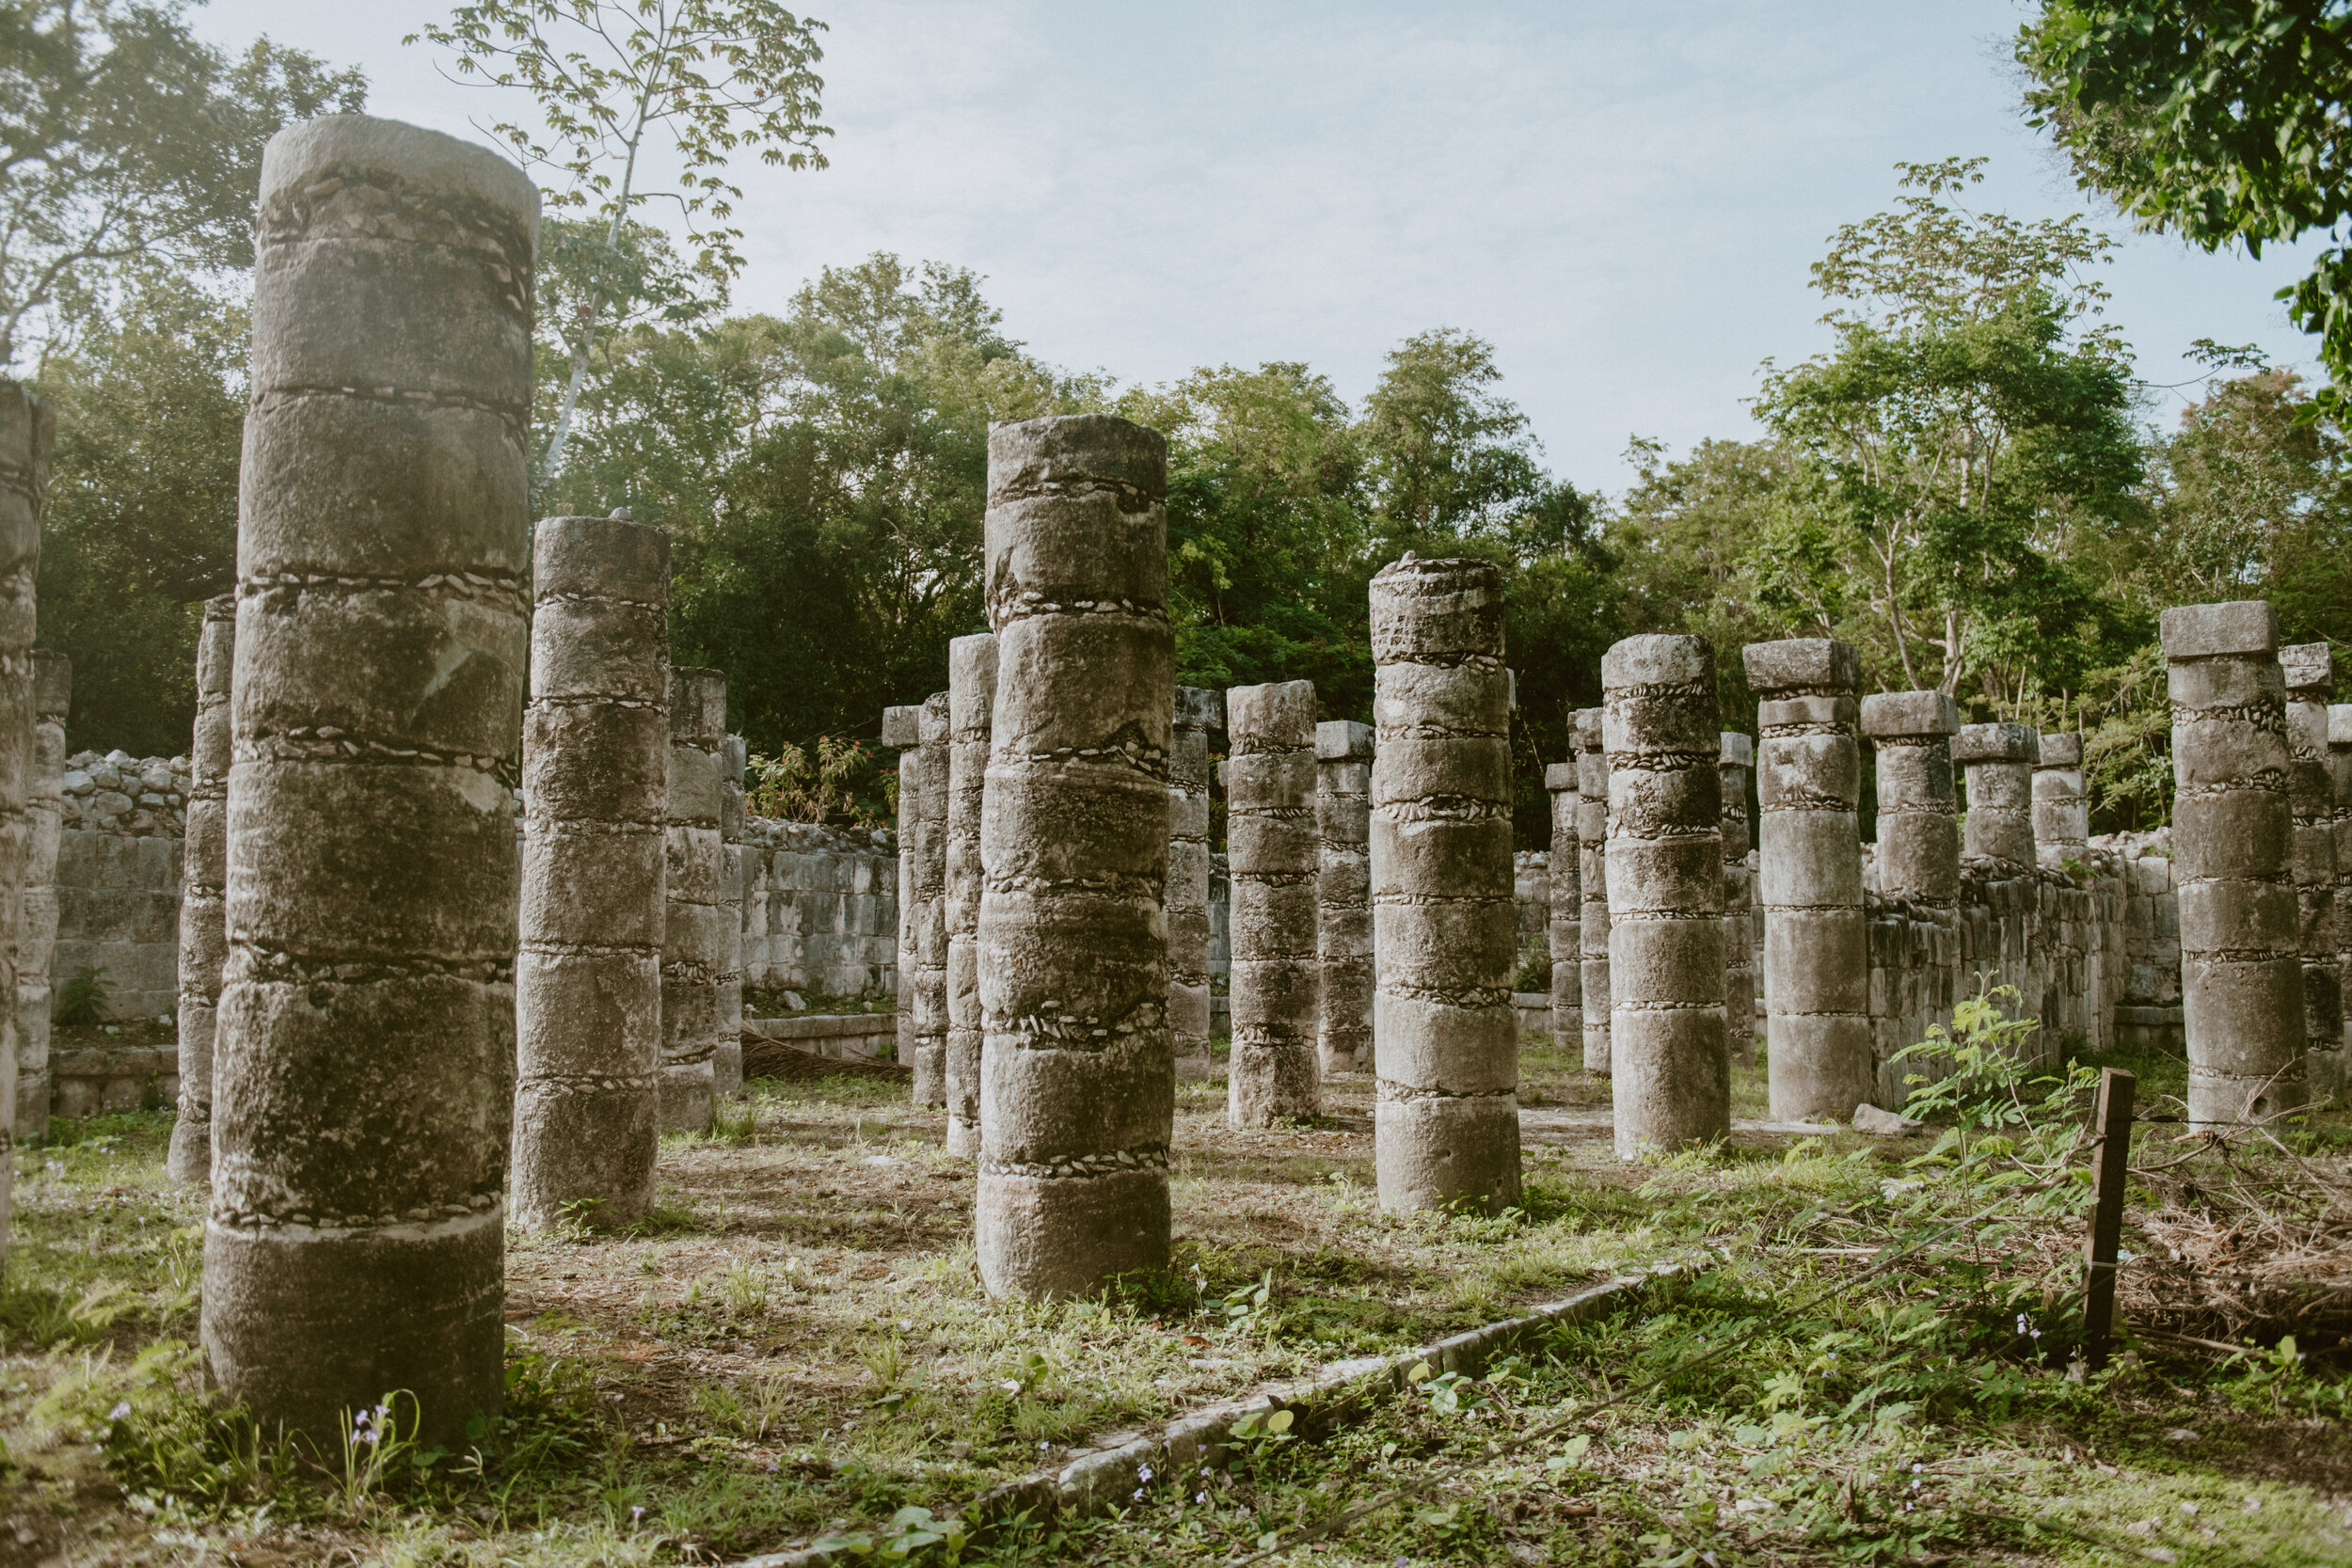 MyBestPlace - Ik Kil, the “Sacred Blue Cenote” of Yucatán